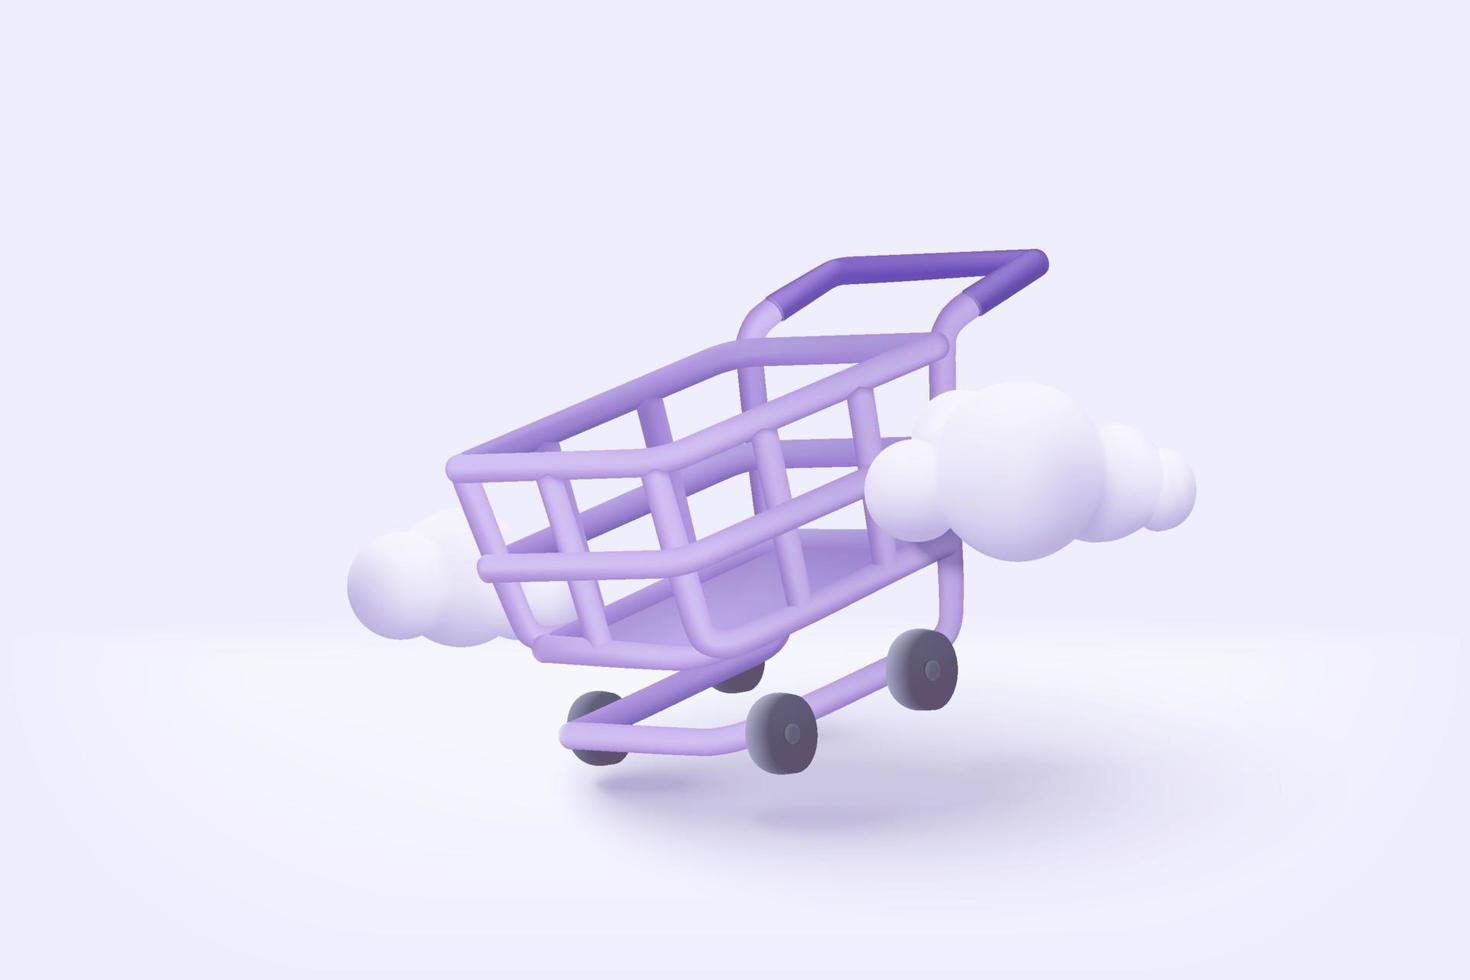 3D-Einkaufswagen mit Cloud für Online-Shopping und digitale Marketingideen. Warenkorb und Werbeetiketten auf weißem Hintergrund Einkaufstasche kaufen verkaufen Rabatt 3D-Vektorsymbol Illustration vektor